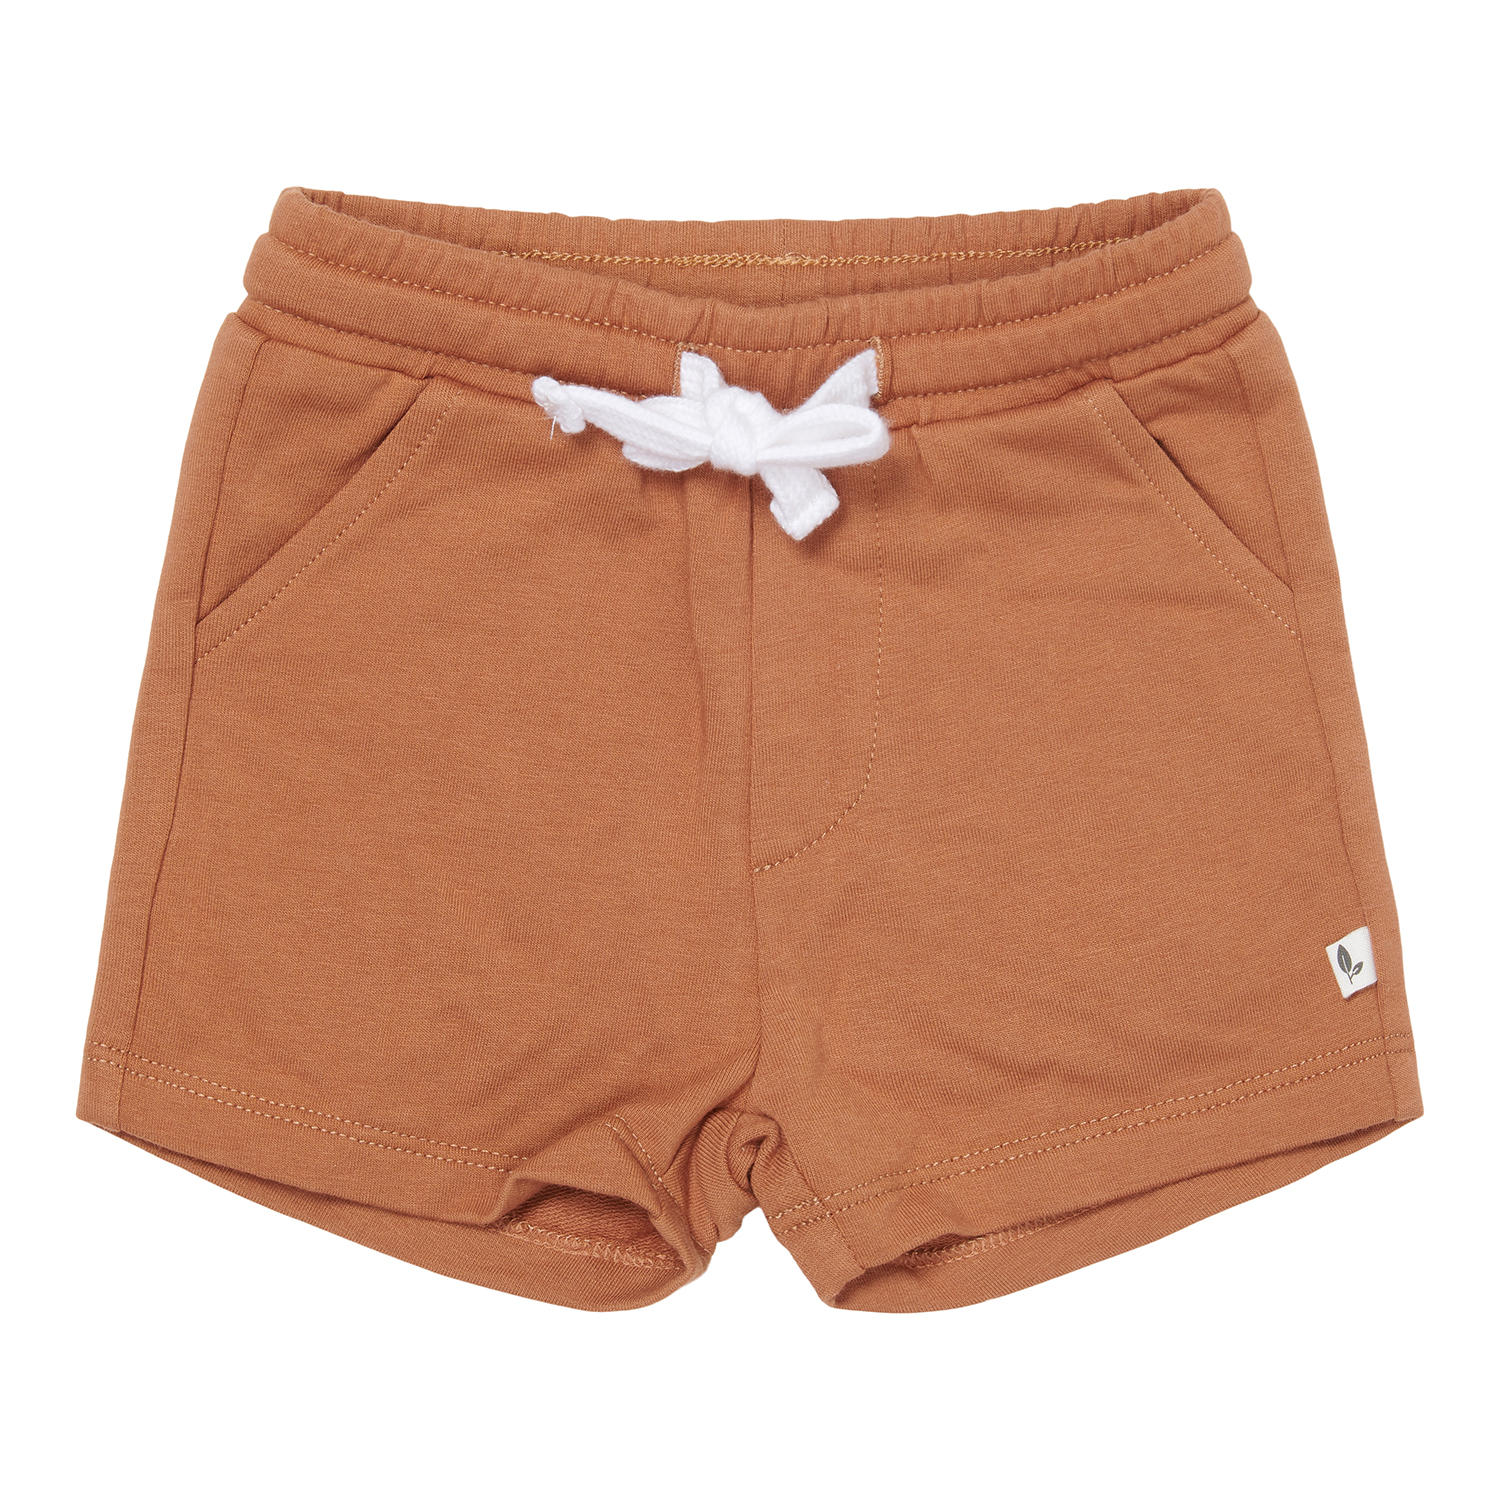 Kurze Hose / Shorts mit Taschen Vintage Sunny Stripes orange (Gr. 86)